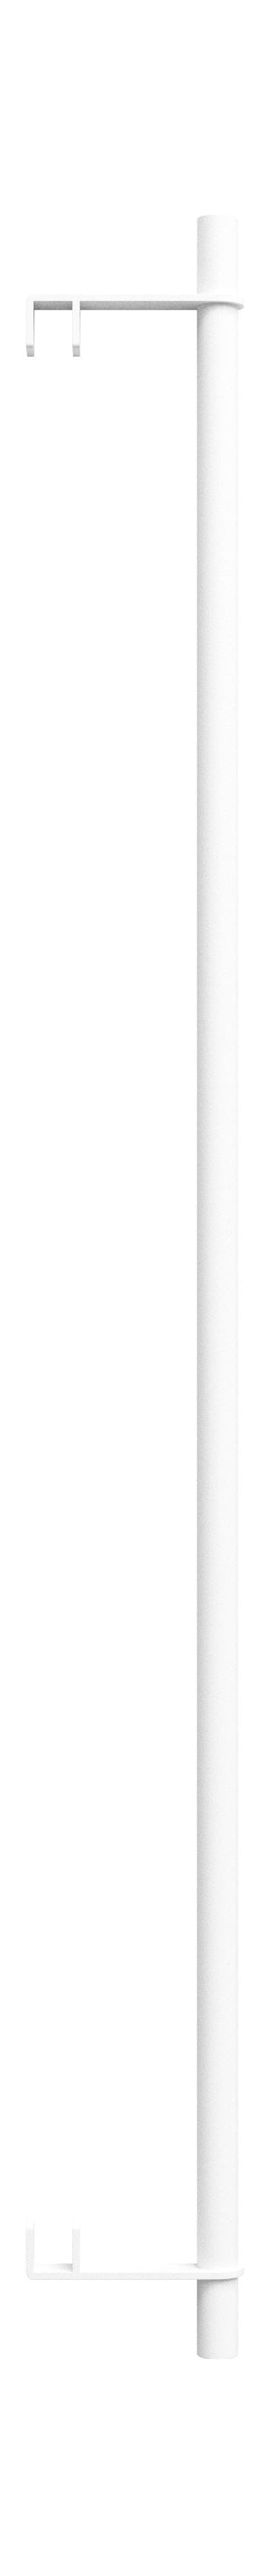 Moebe Hylder system/væg hylder tøjstang 85 cm, hvid